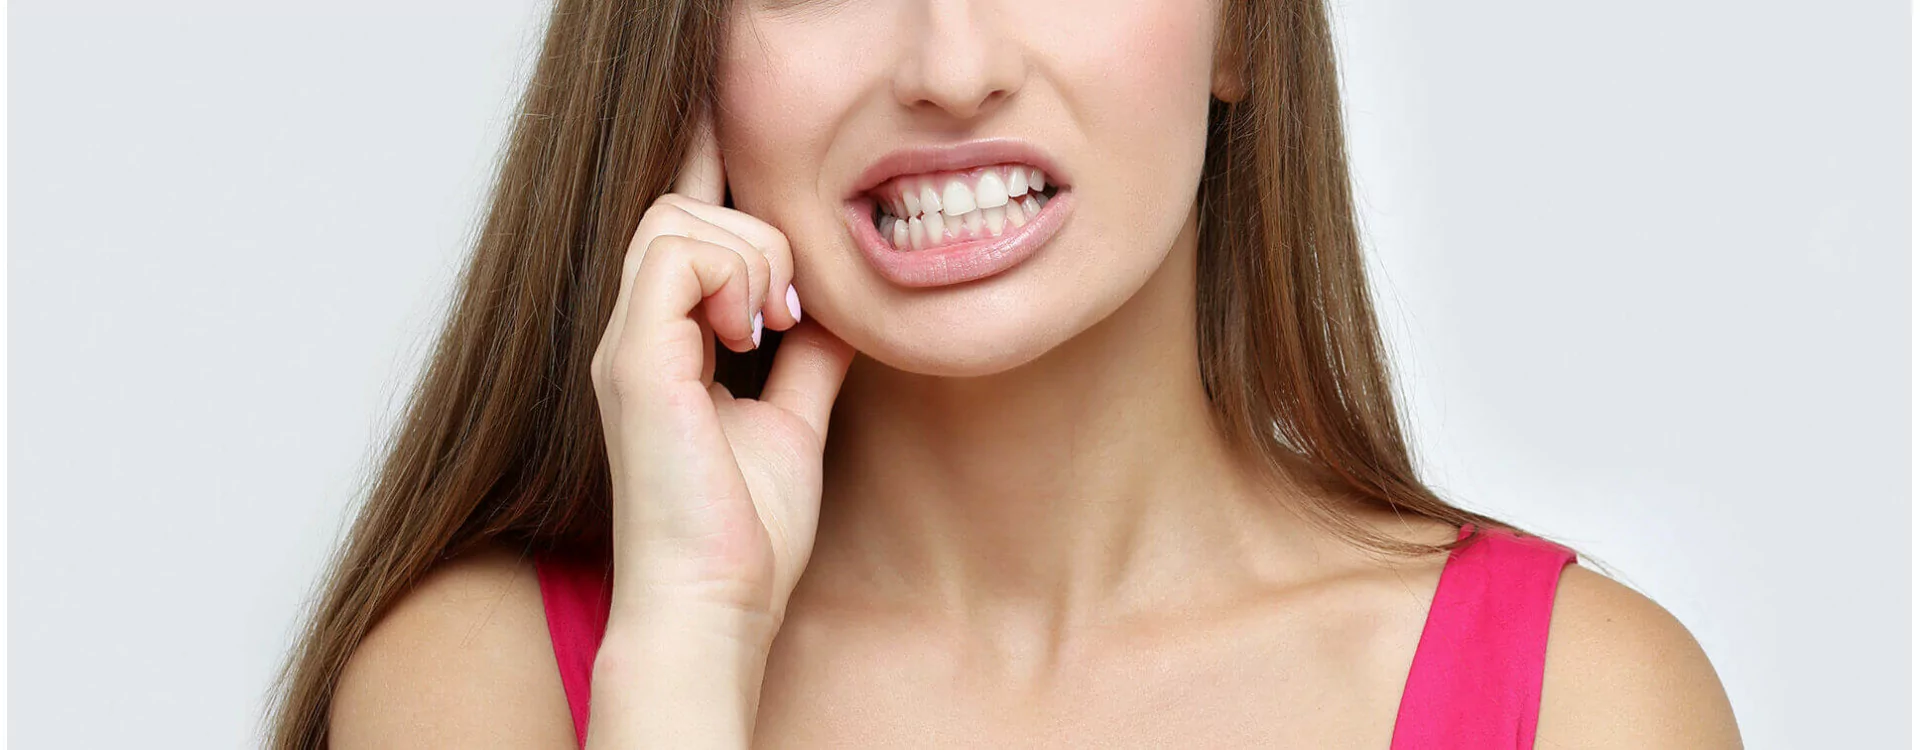 Collant chair : pourquoi cet accessoire fait si souvent grincer des dents ?  - Voici